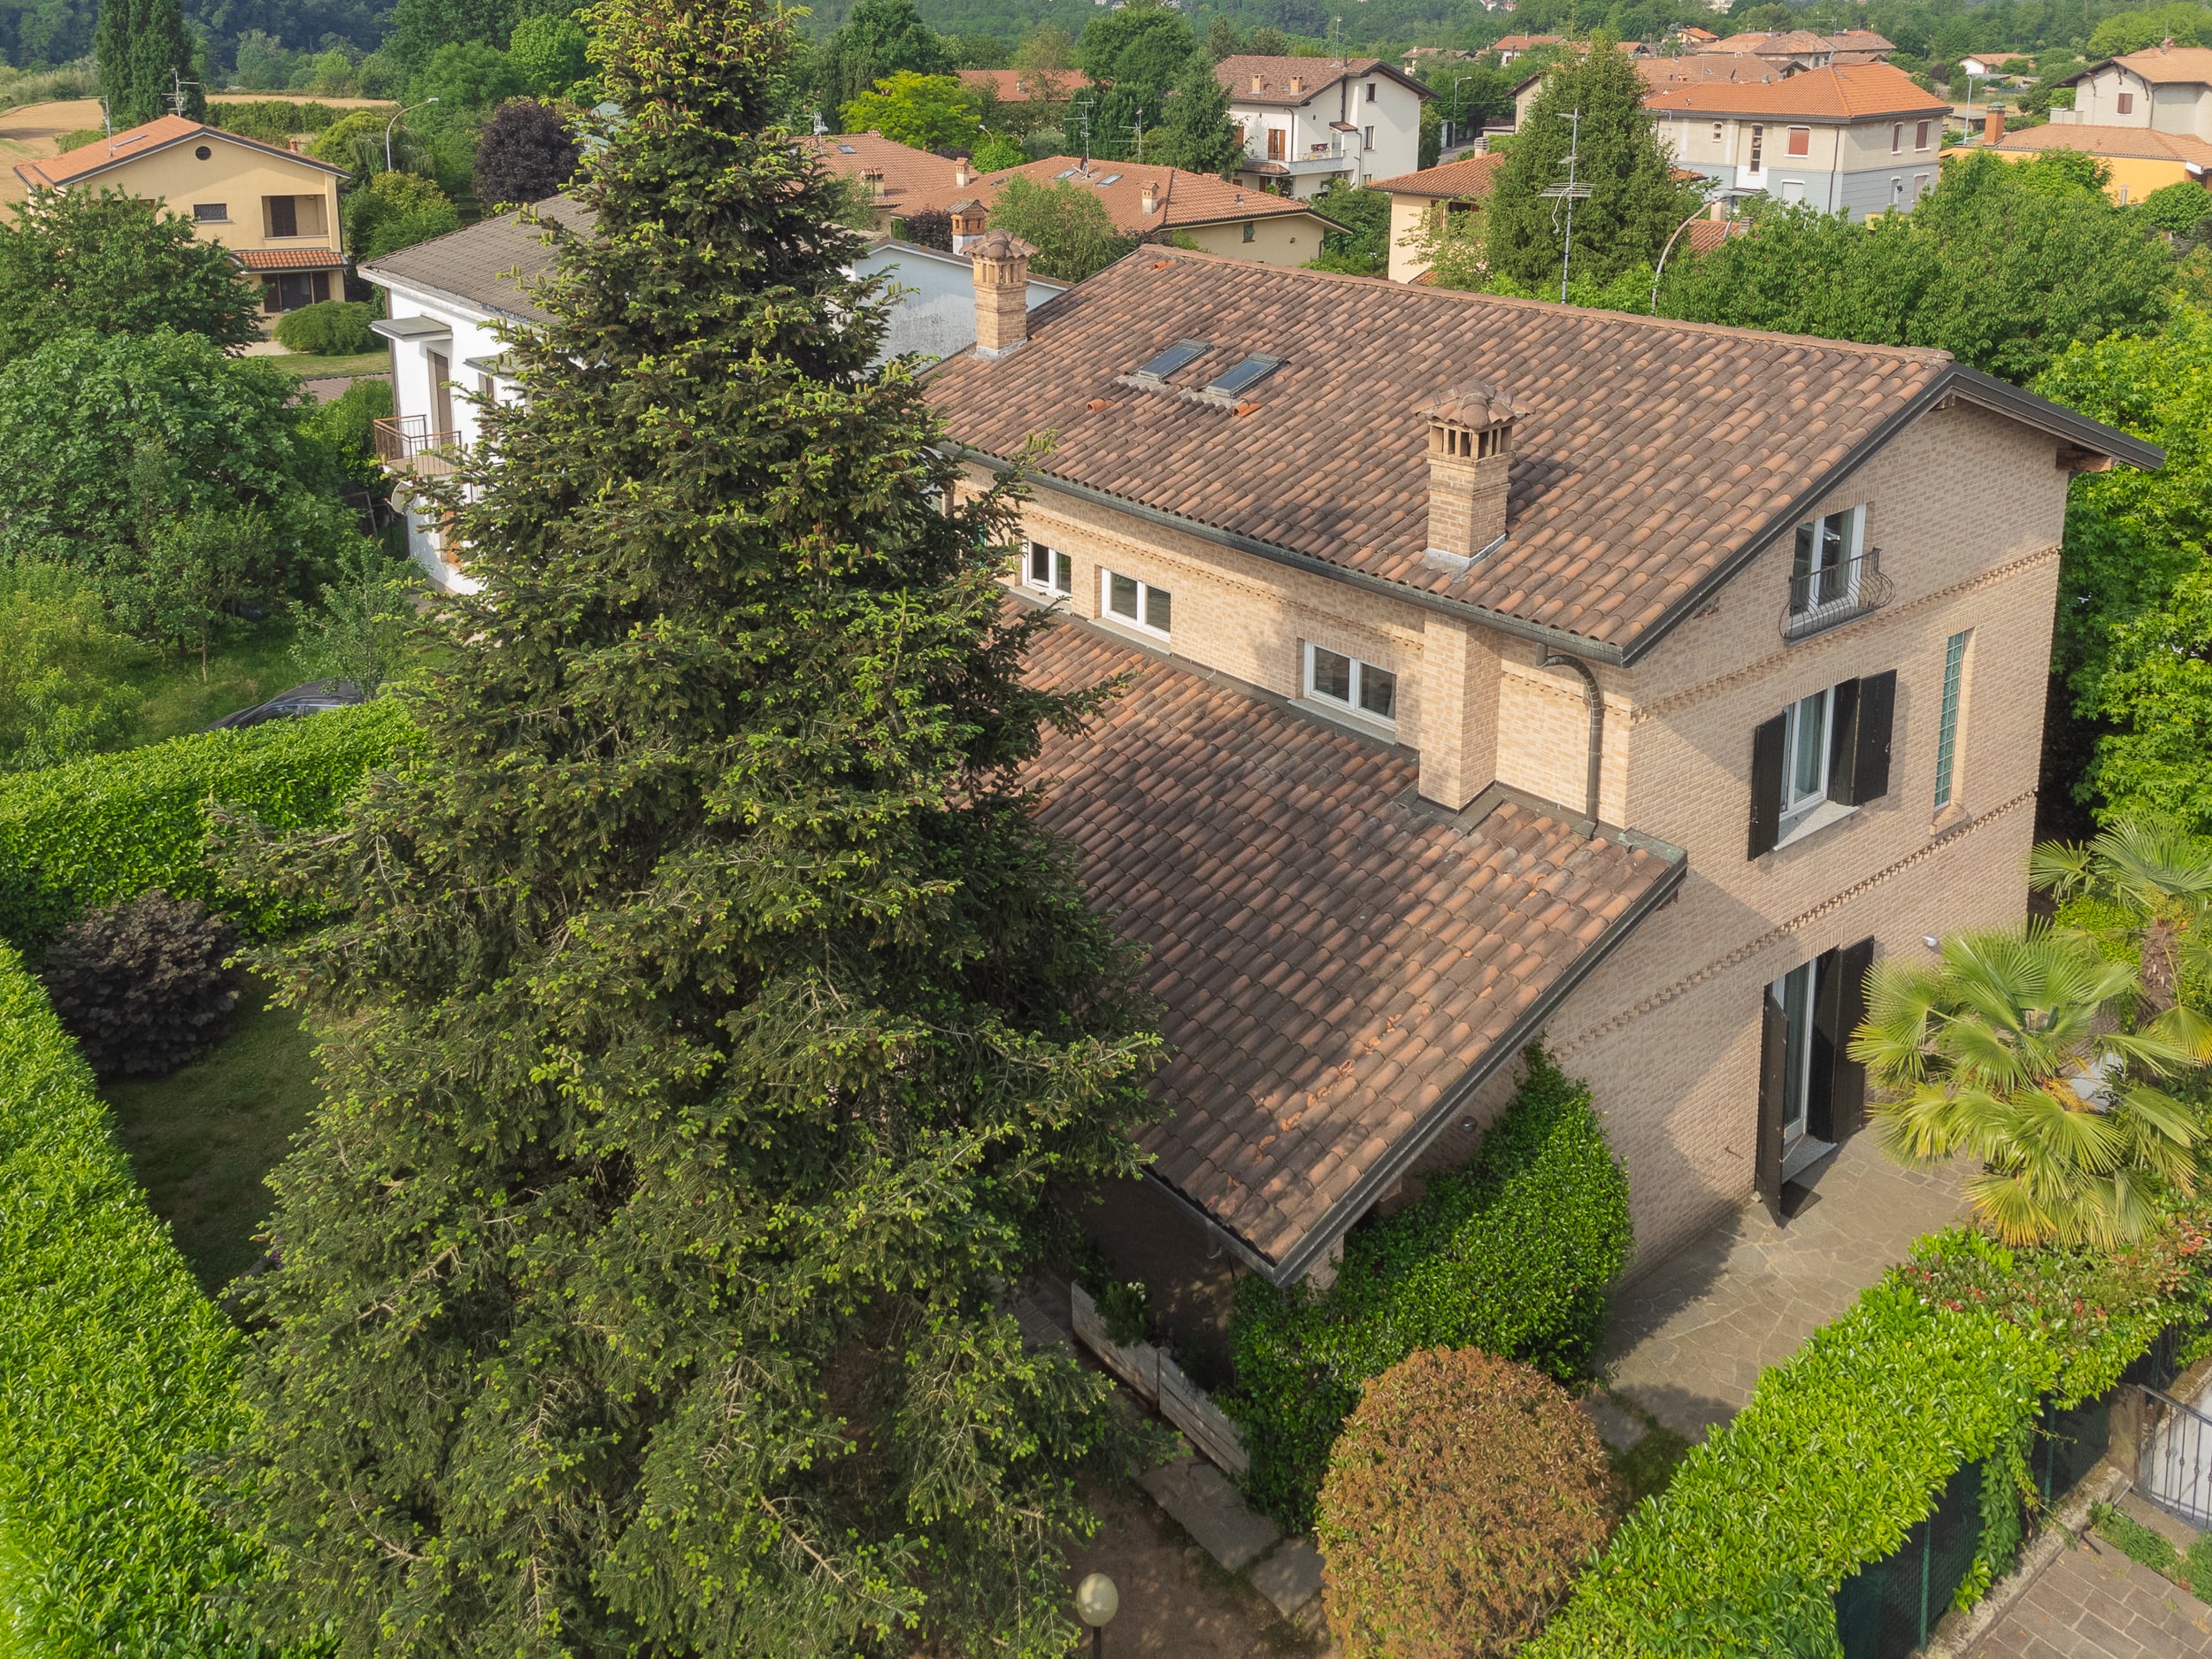 For sale villa in quiet zone Triuggio Lombardia